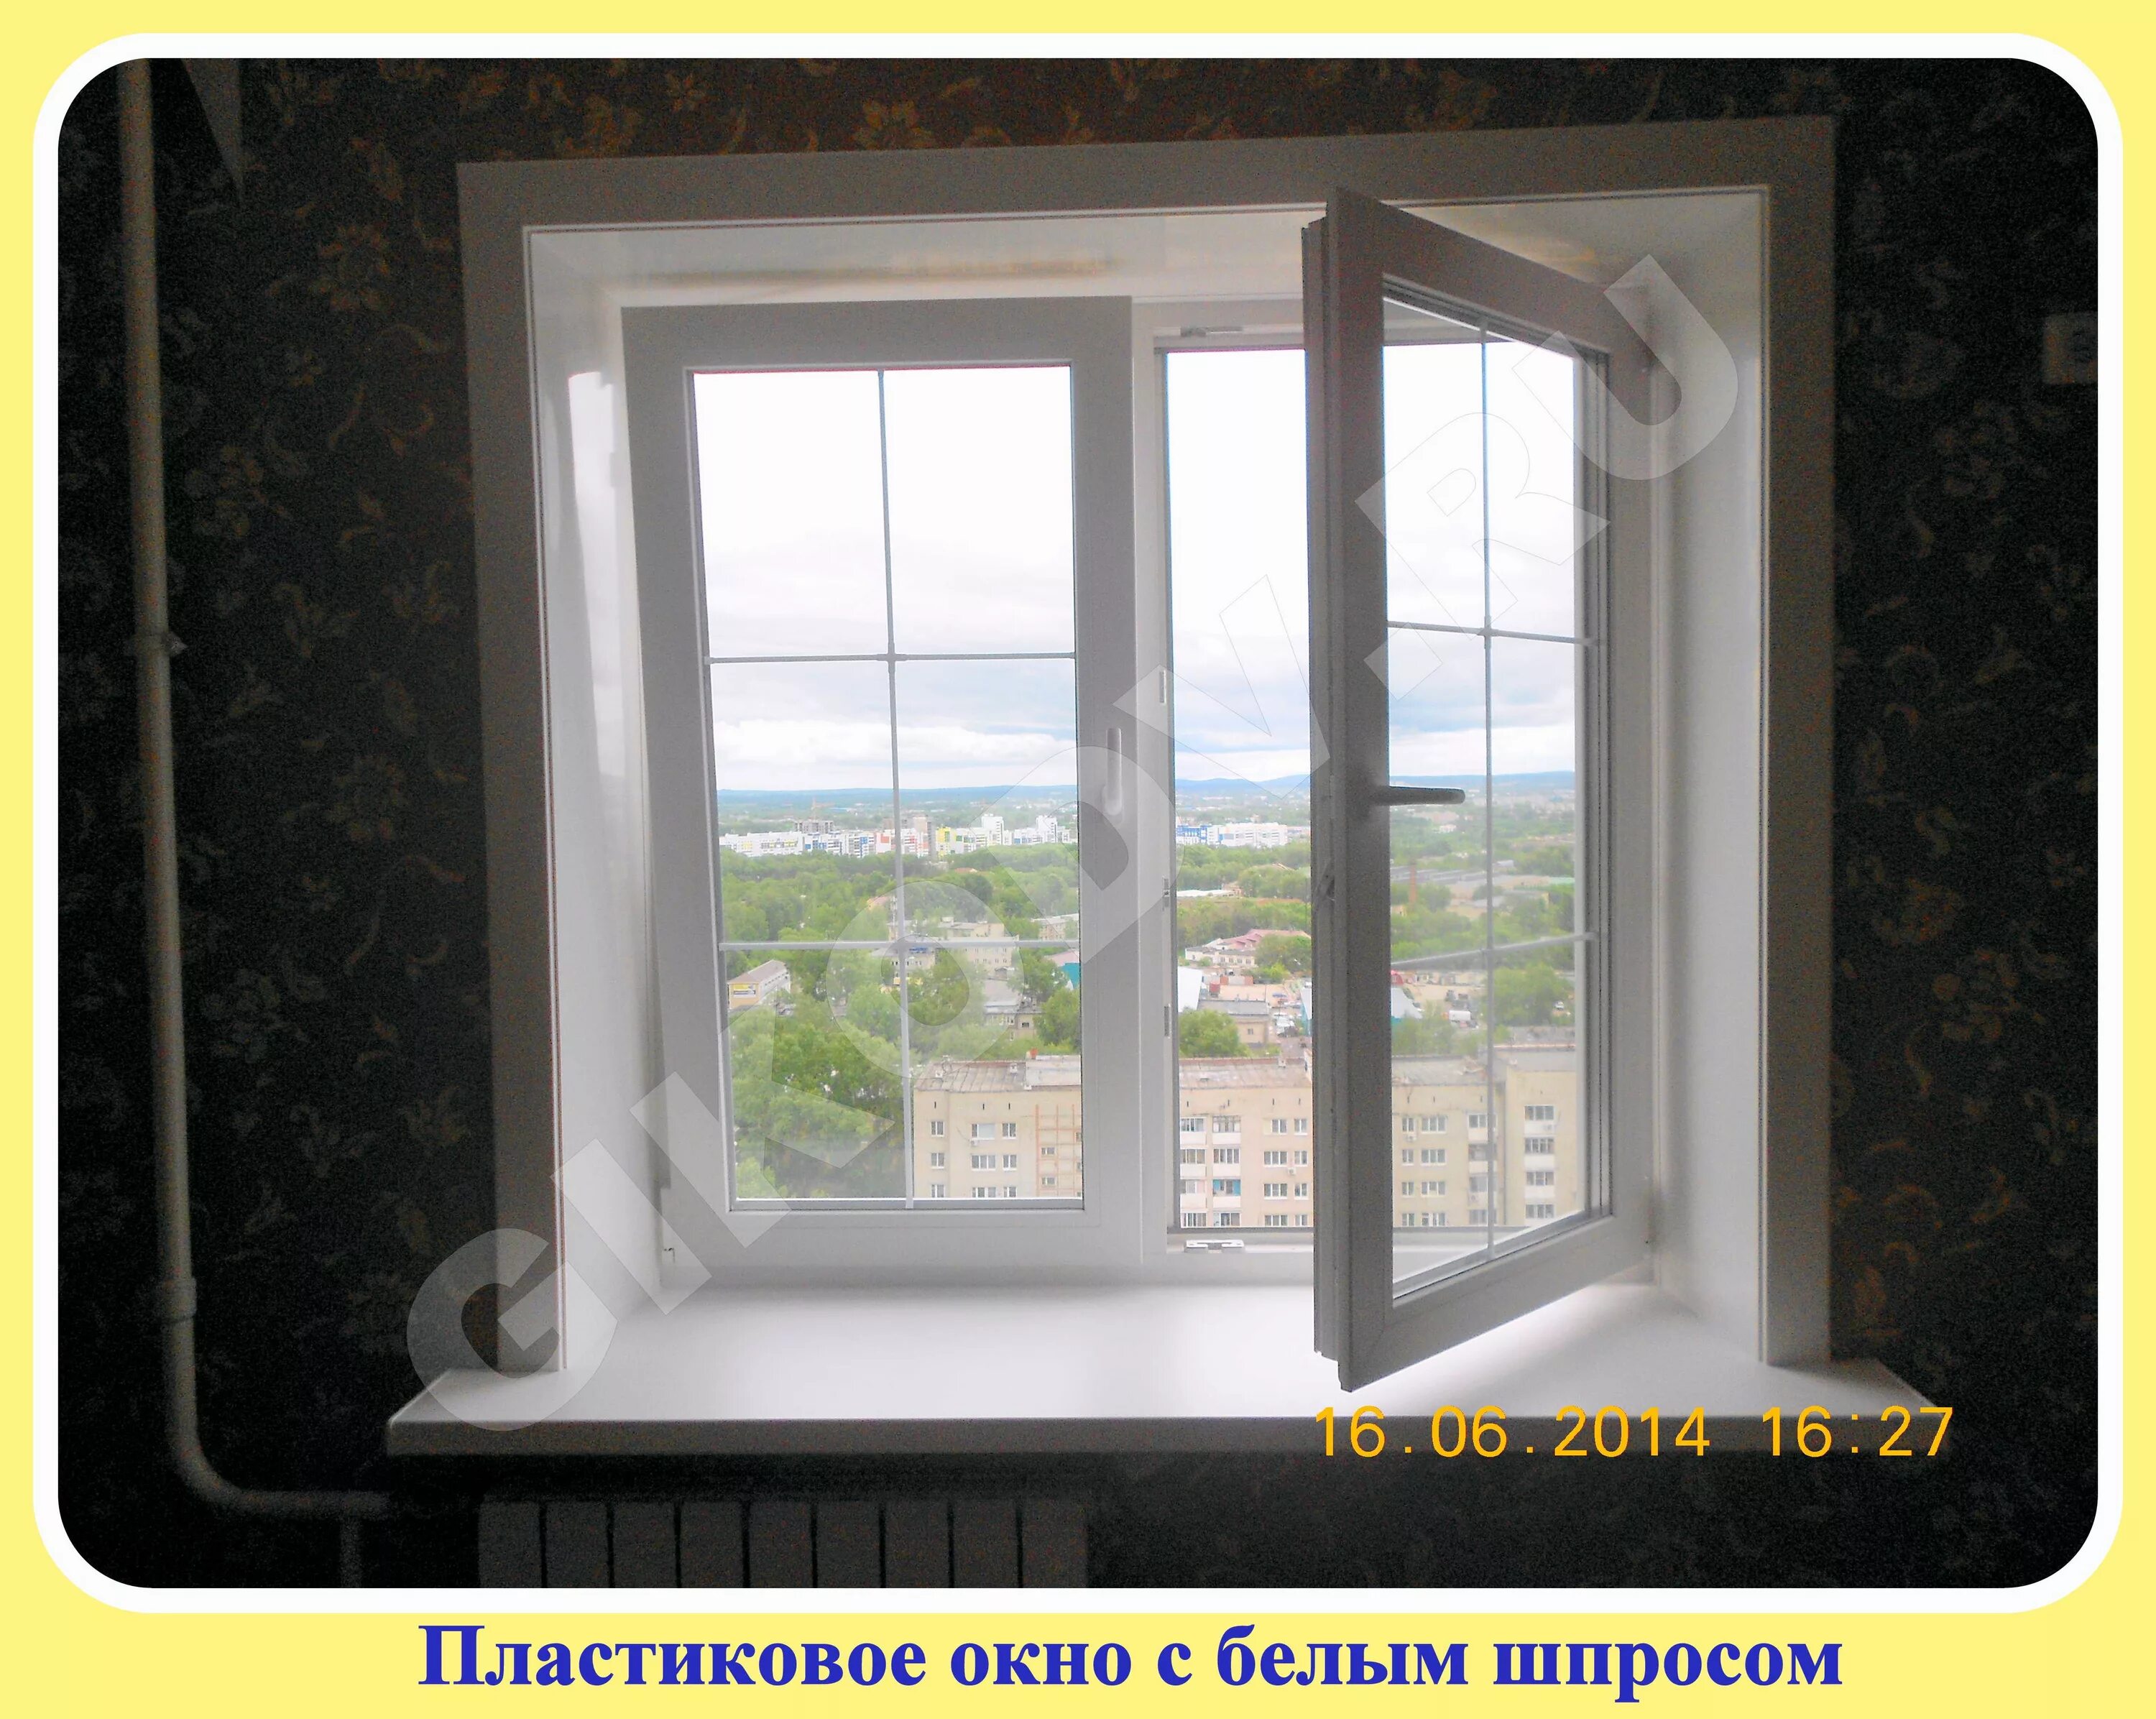 Пластиковые окна Хабаровск. Монтаж пластиковых окон в Хабаровске. ПВХ окно Хабаровск. Английское окно пластиковое Хабаровск.